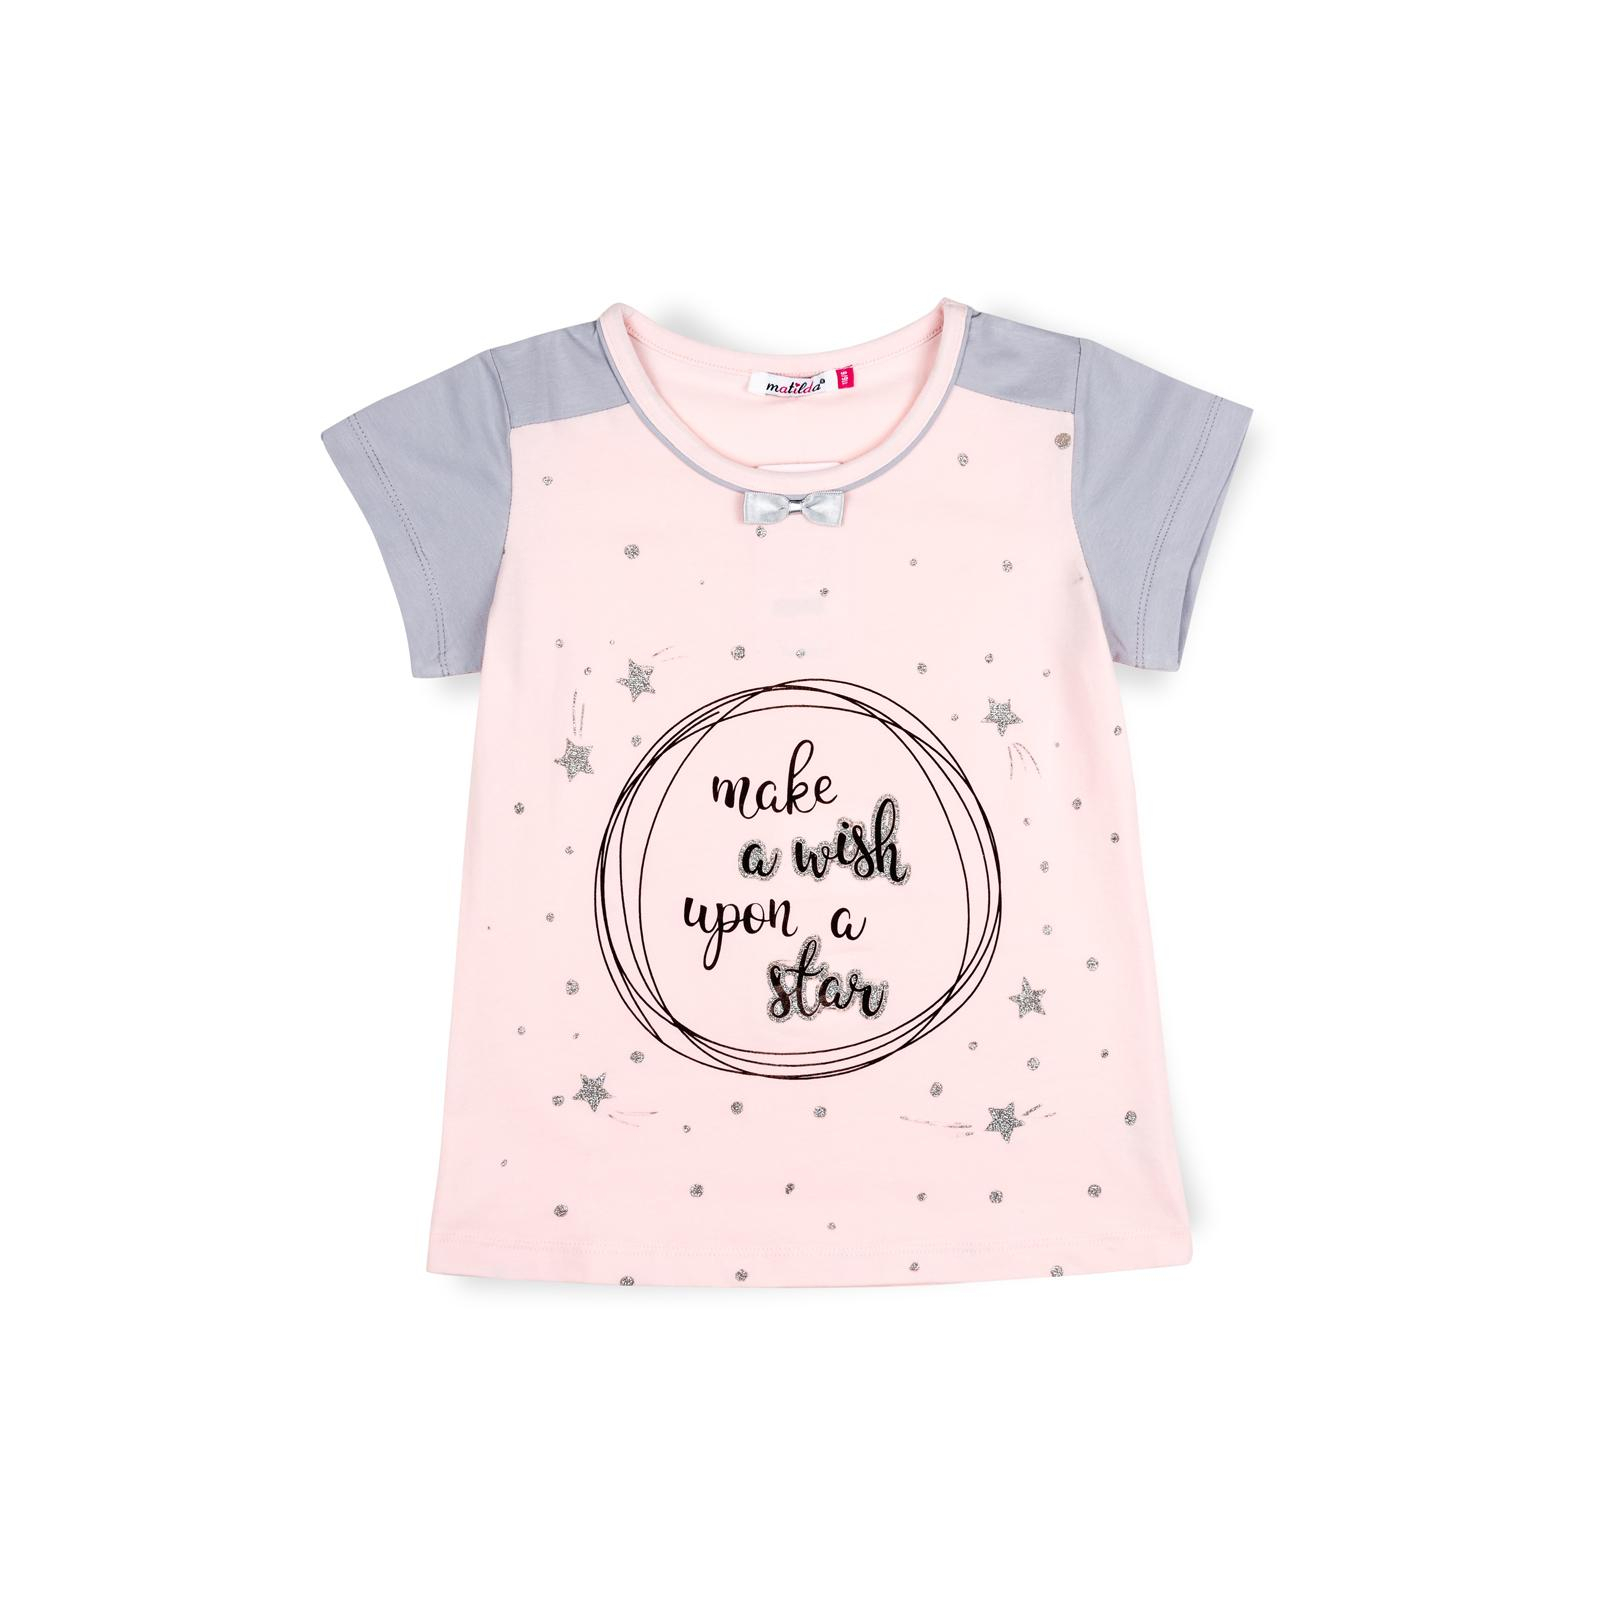 Пижама Matilda со звездочками (7991-116G-pink) изображение 2